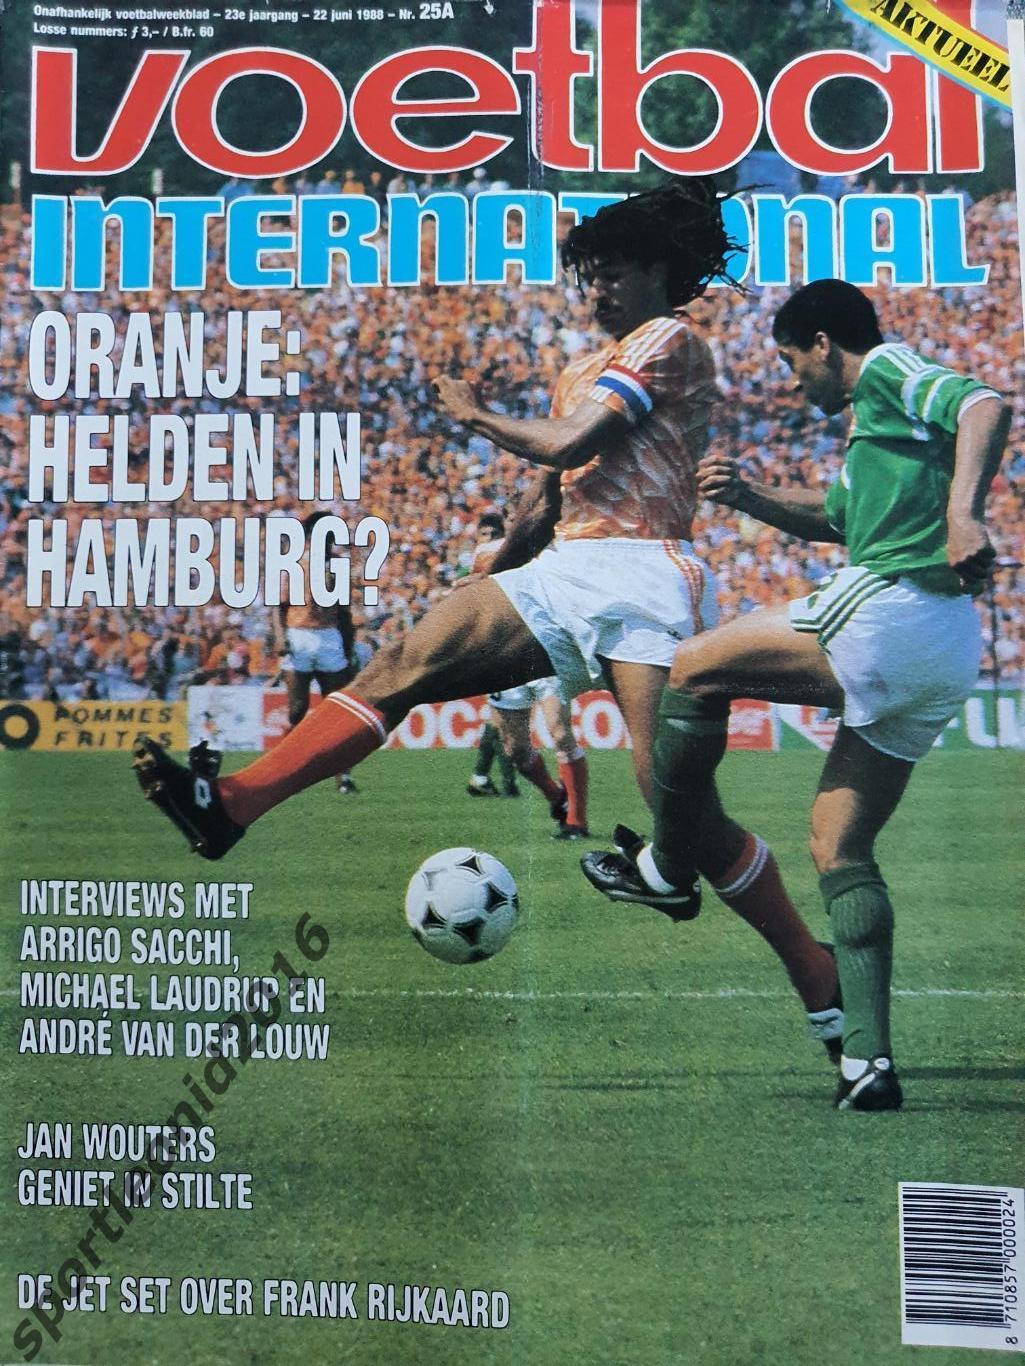 Voetbal International 1988.Годовая подписка.52 номера +4 спецвыпуска к Евро-88.7 1